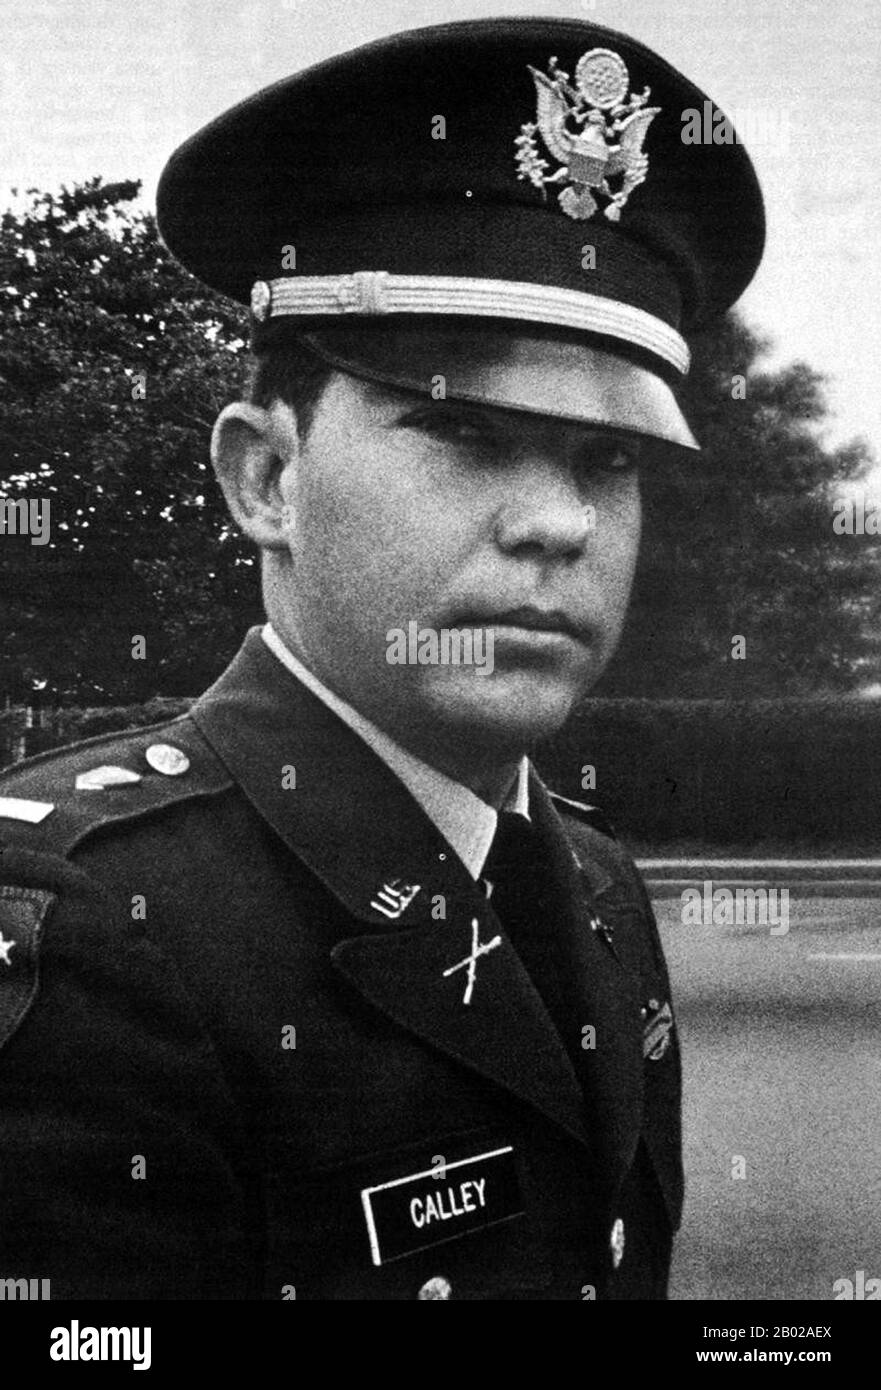 La Masacre de My Lai fue el asesinato en masa de 504–347 civiles desarmados en Vietnam del Sur el 16 de marzo de 1968, por soldados del Ejército de los Estados Unidos de la Compañía "Charlie" del primer Batallón, 20º Regimiento de Infantería, 11ª brigada de la División Americal. La mayoría de las víctimas eran mujeres, niños (incluidos los bebés) y ancianos. Muchos fueron violados, golpeados y torturados, y algunos de los cuerpos fueron posteriormente mutilados. Mientras 26 soldados estadounidenses fueron acusados inicialmente de delitos penales por sus acciones en Mỹ Lai, el único teniente William Calley, líder pelotón de Charlie Company, Foto de stock